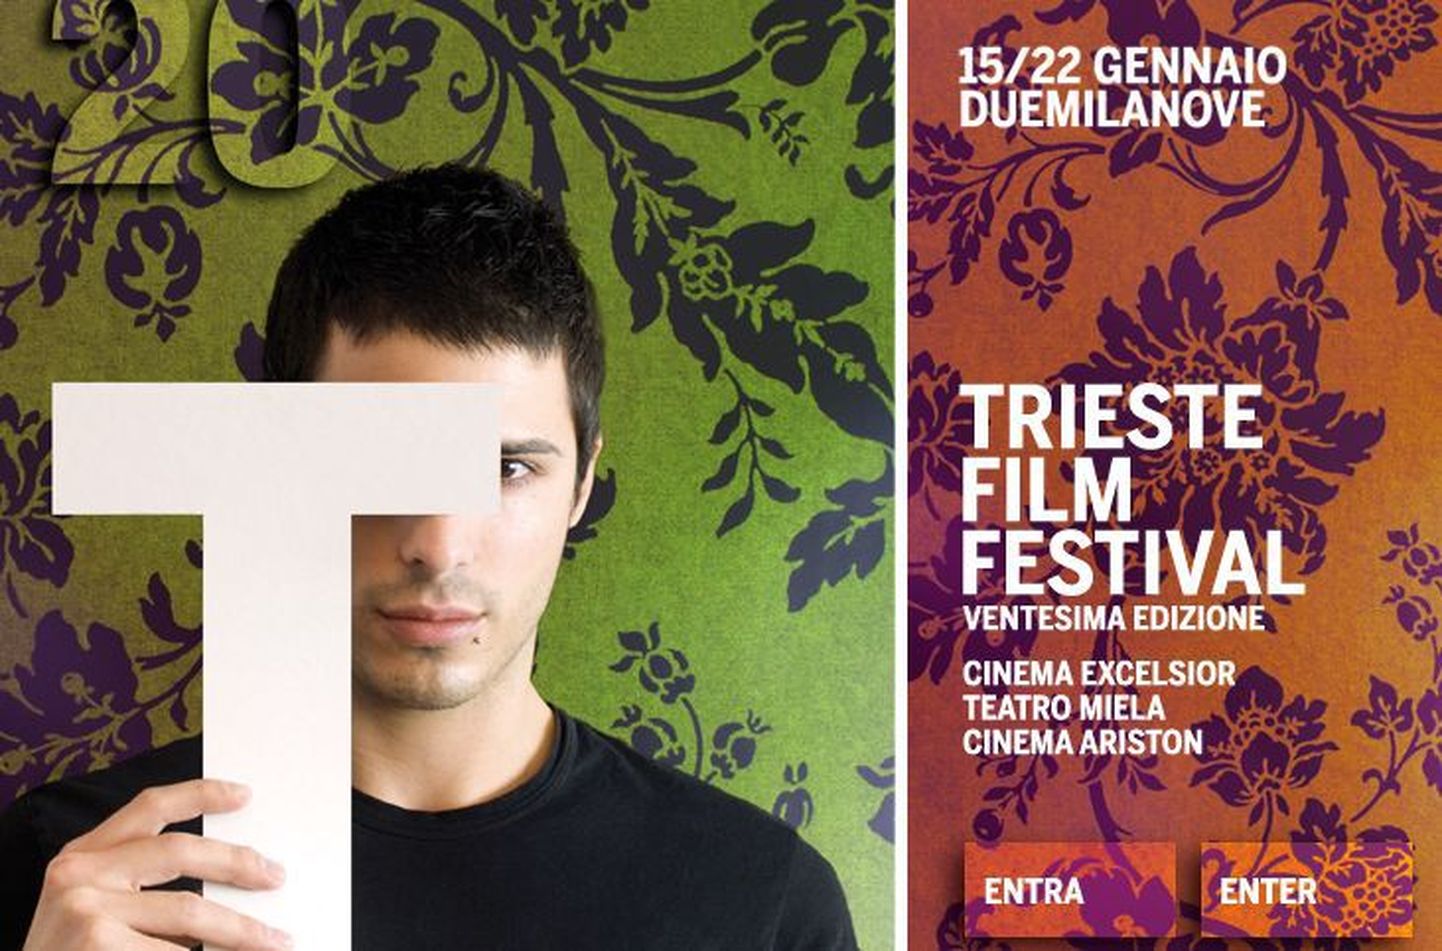 Trieste filmifestivali kodulehekülje frgament.